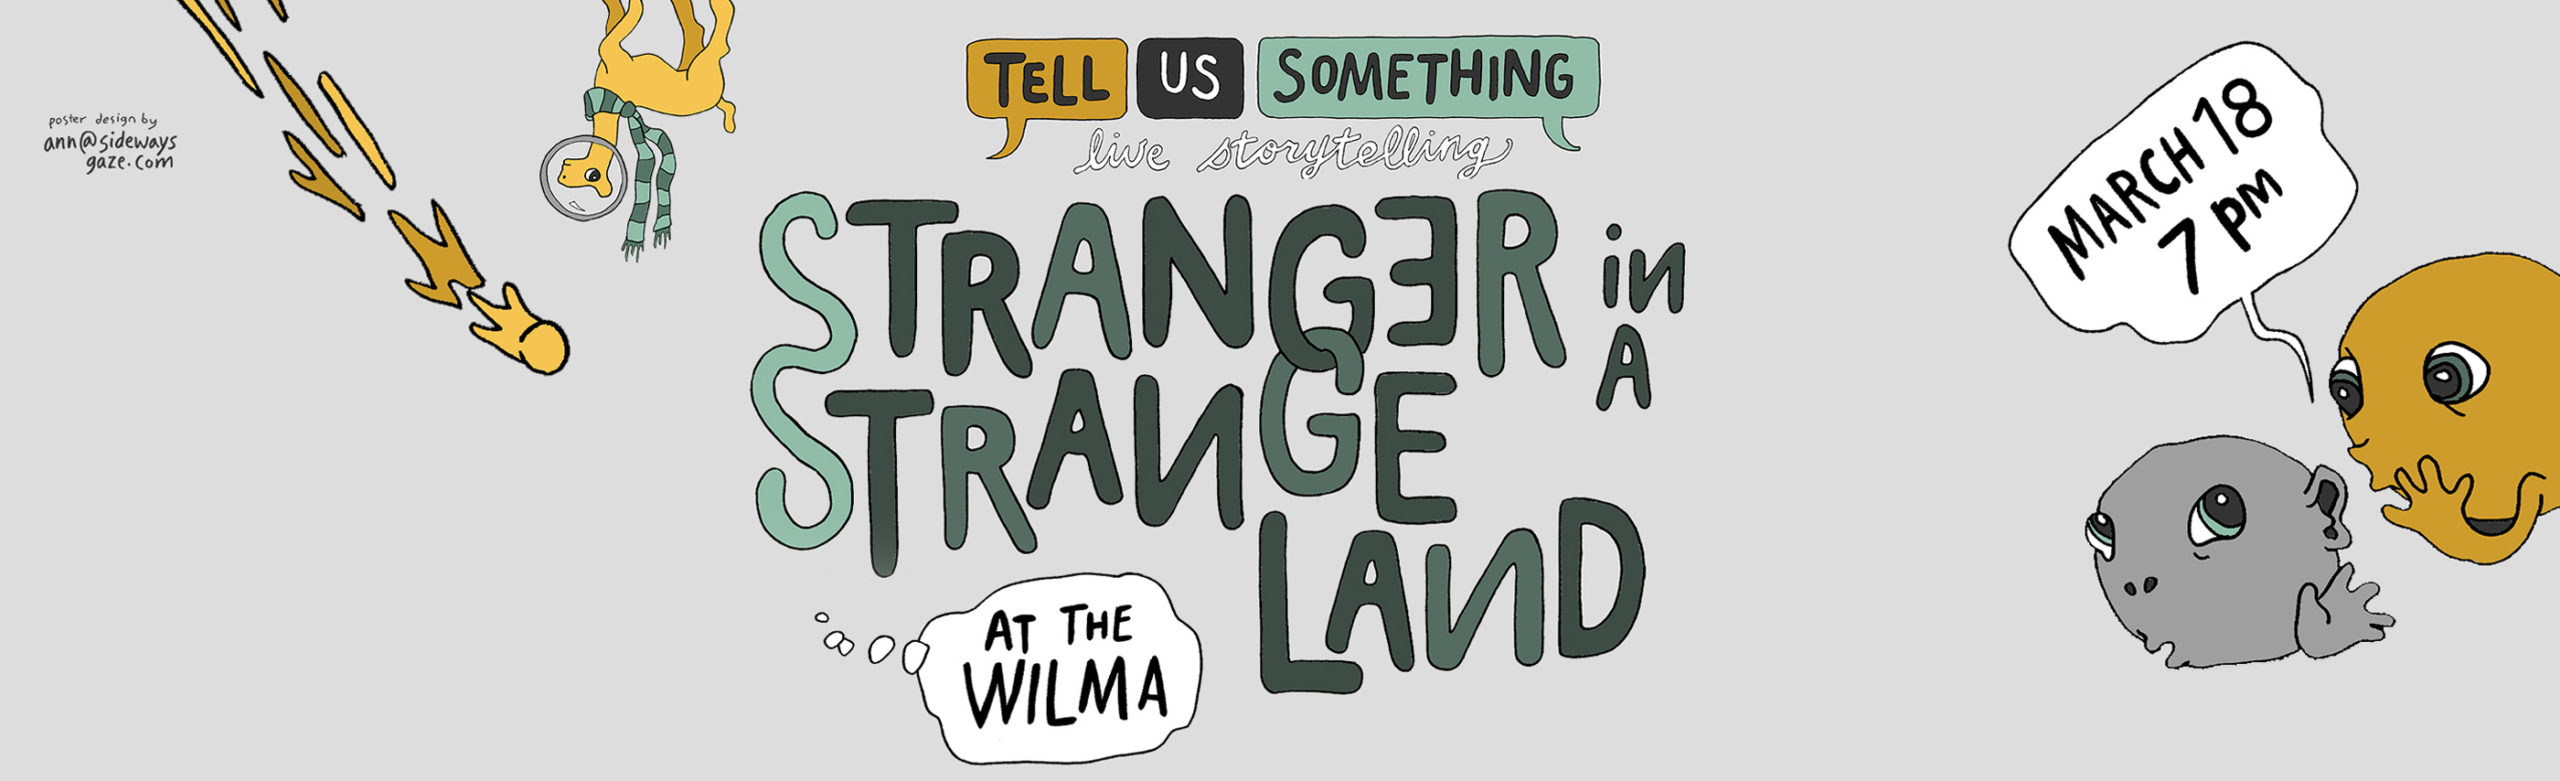 Event Info: Tell Us Something – Stranger In A Strange Land Image